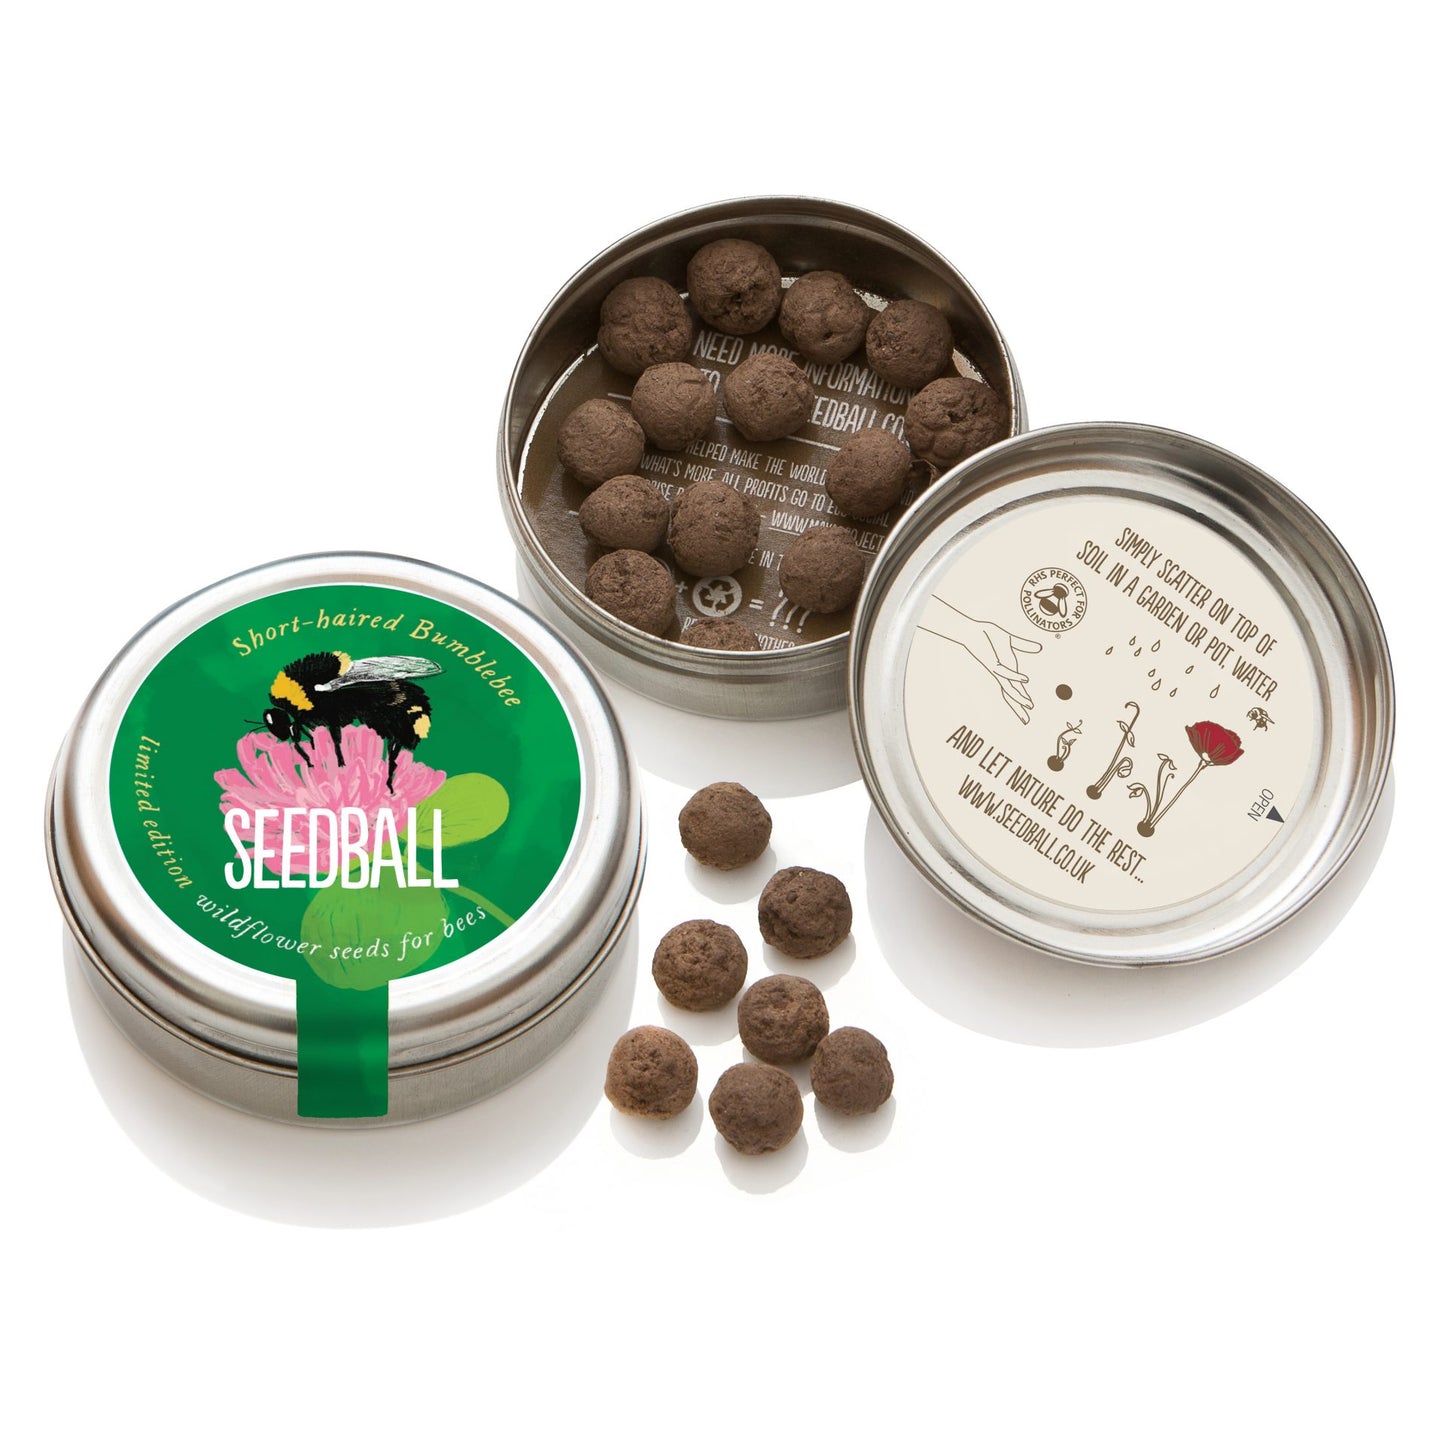 Short-Haired Bumblebee Seedball Tin